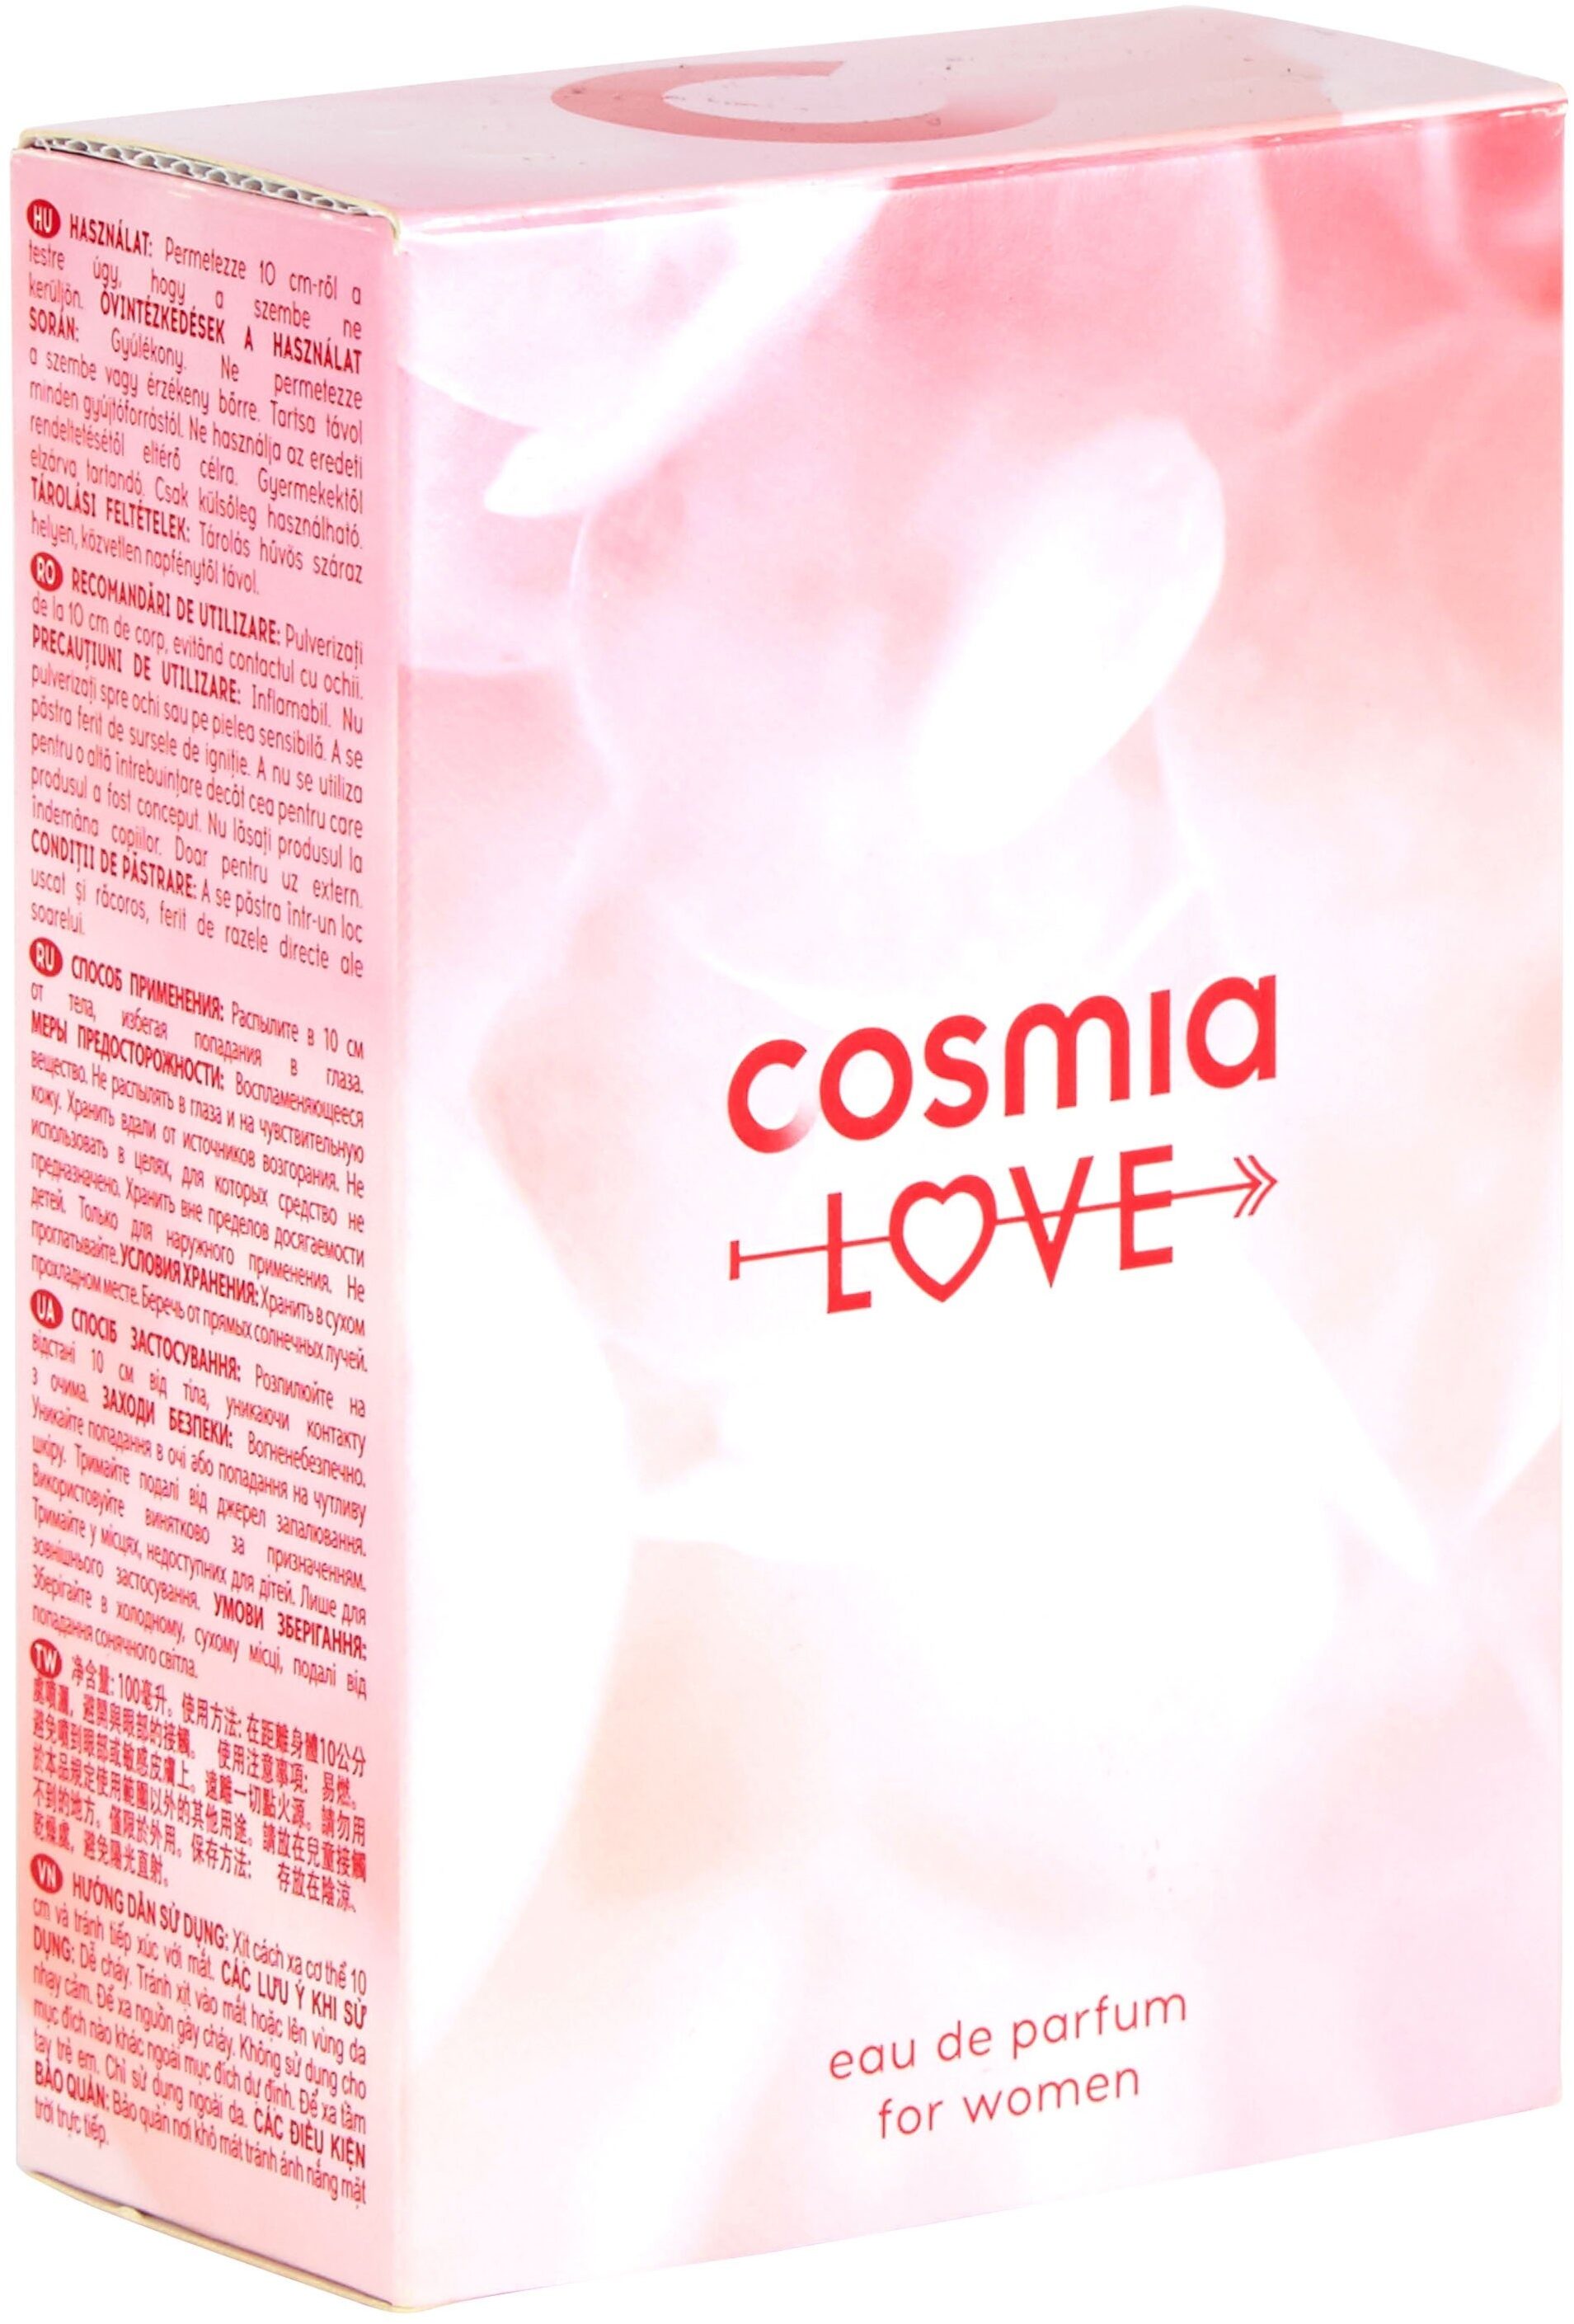 Cosmia - eau de parfum - cosmia amour - pour femme - 100 ml - Tuote - fr